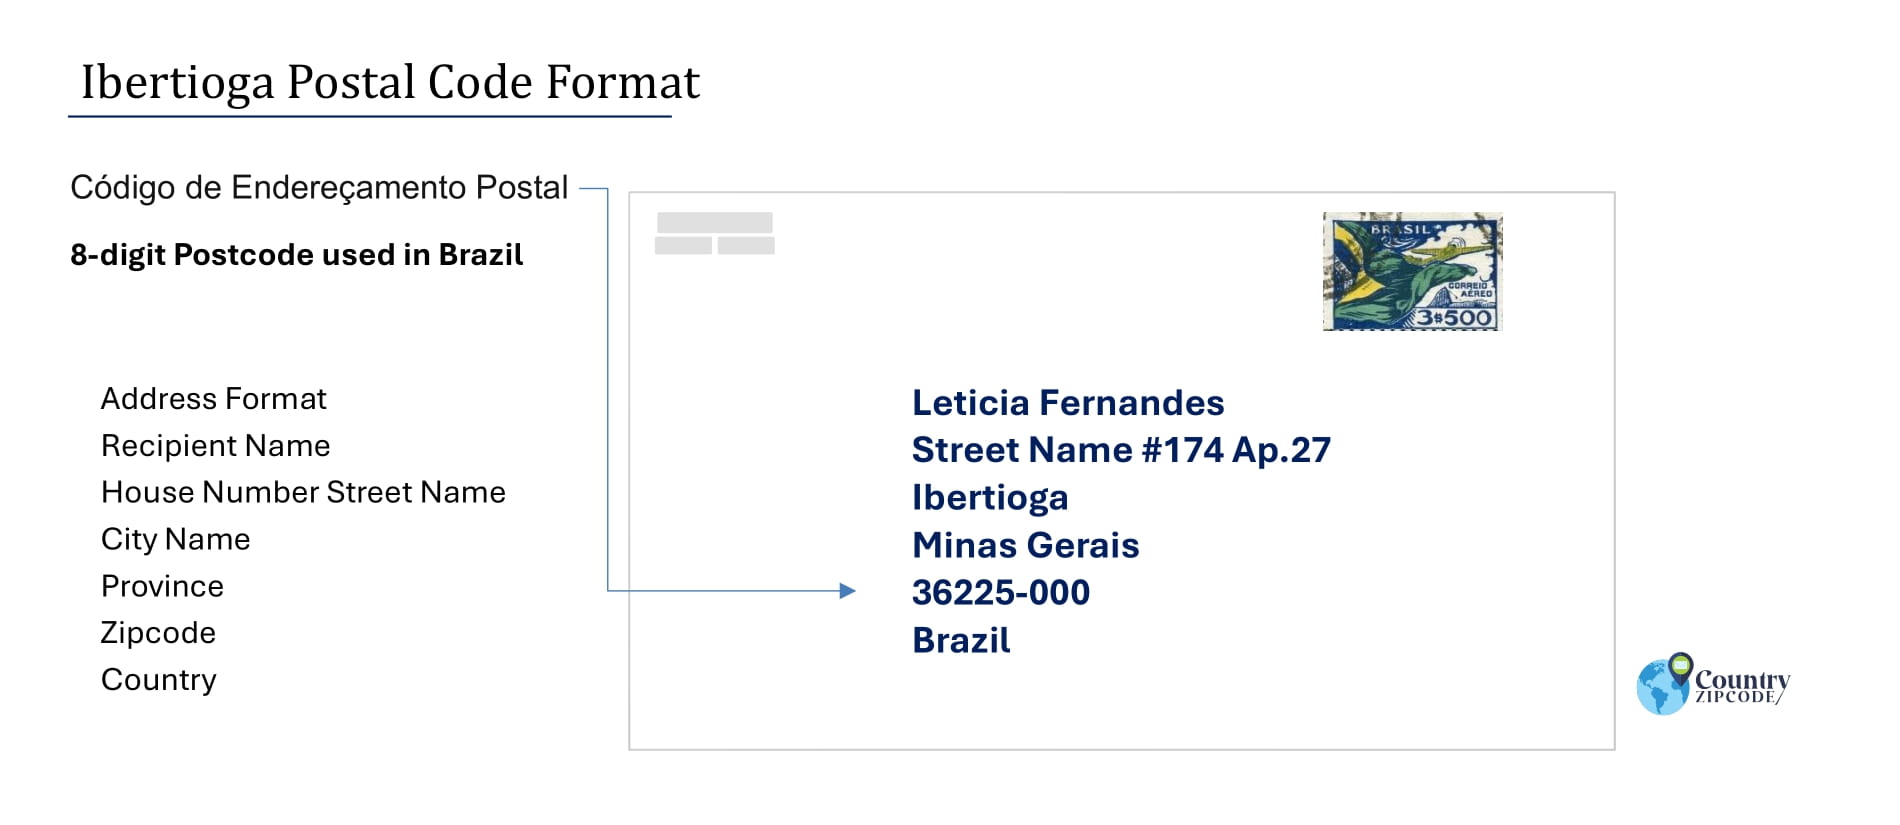 Example of Codigo de Enderecamento Postal and Address format of Ibertioga Brazil